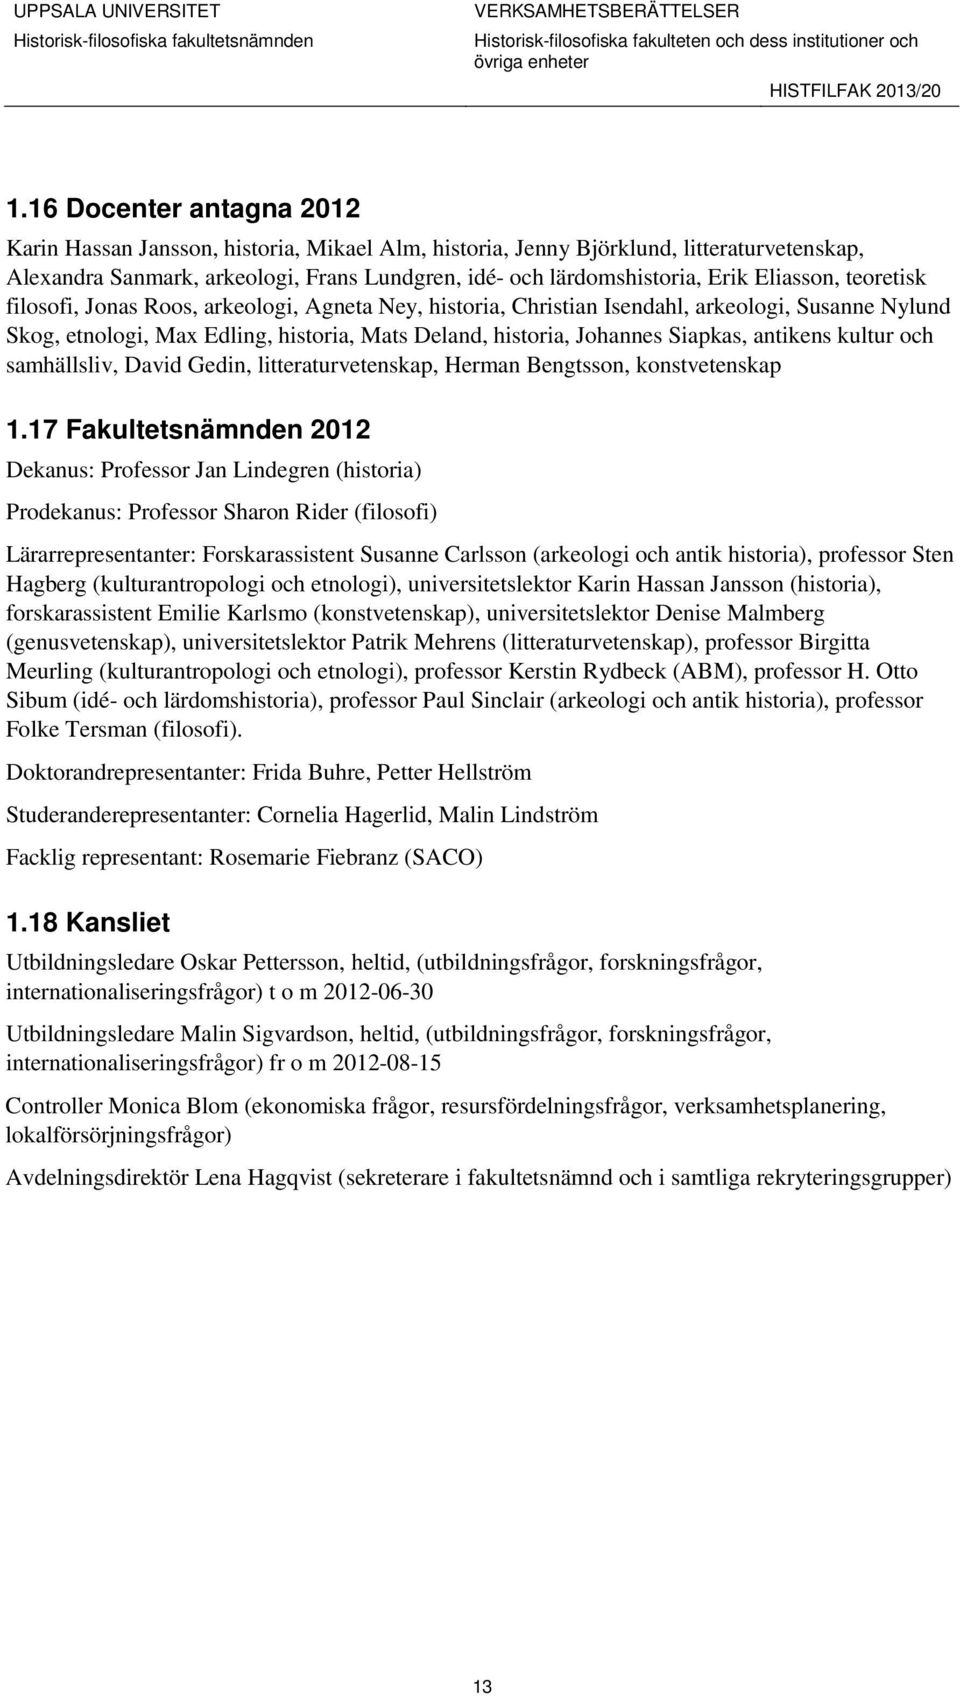 antikens kultur och samhällsliv, David Gedin, litteraturvetenskap, Herman Bengtsson, konstvetenskap 1.